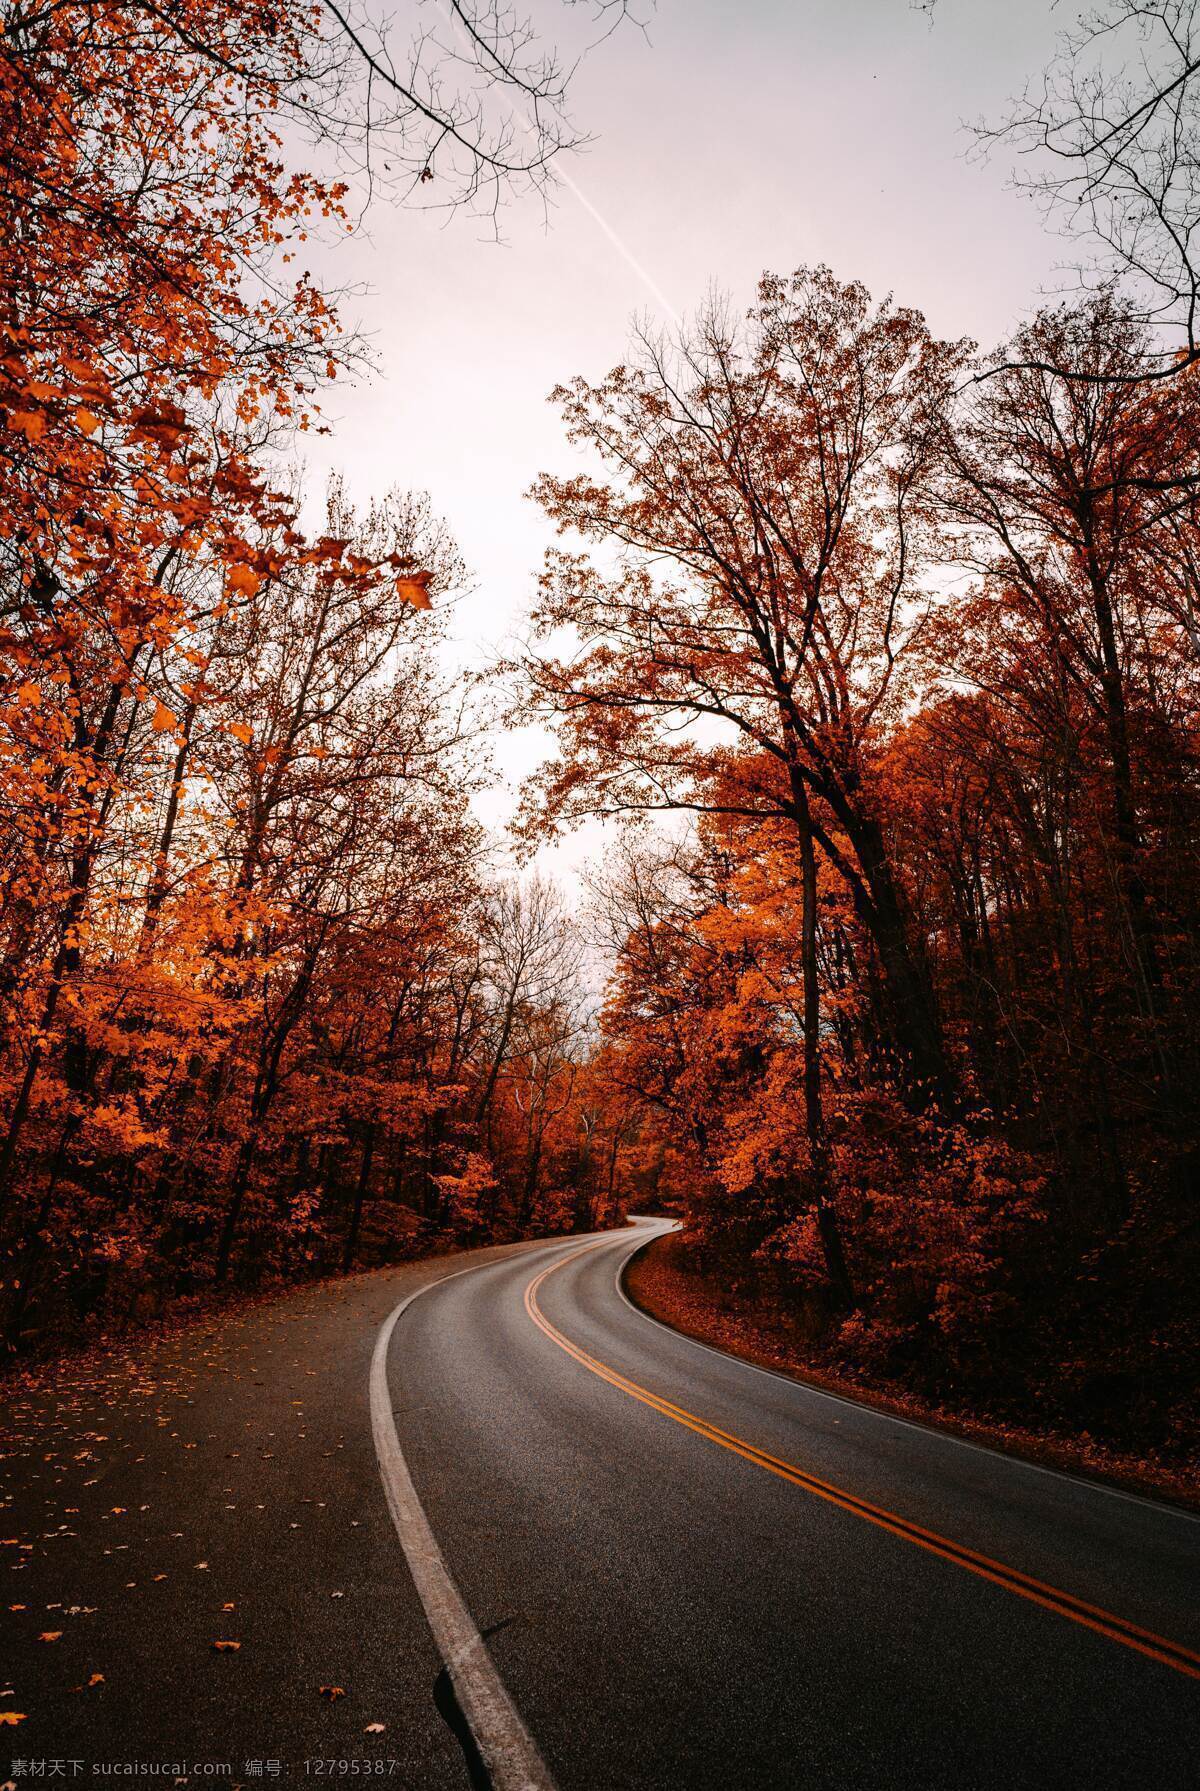 公路图片 枫叶 树林 树木 马路 秋天 自然风光 旅游摄影 自然风景